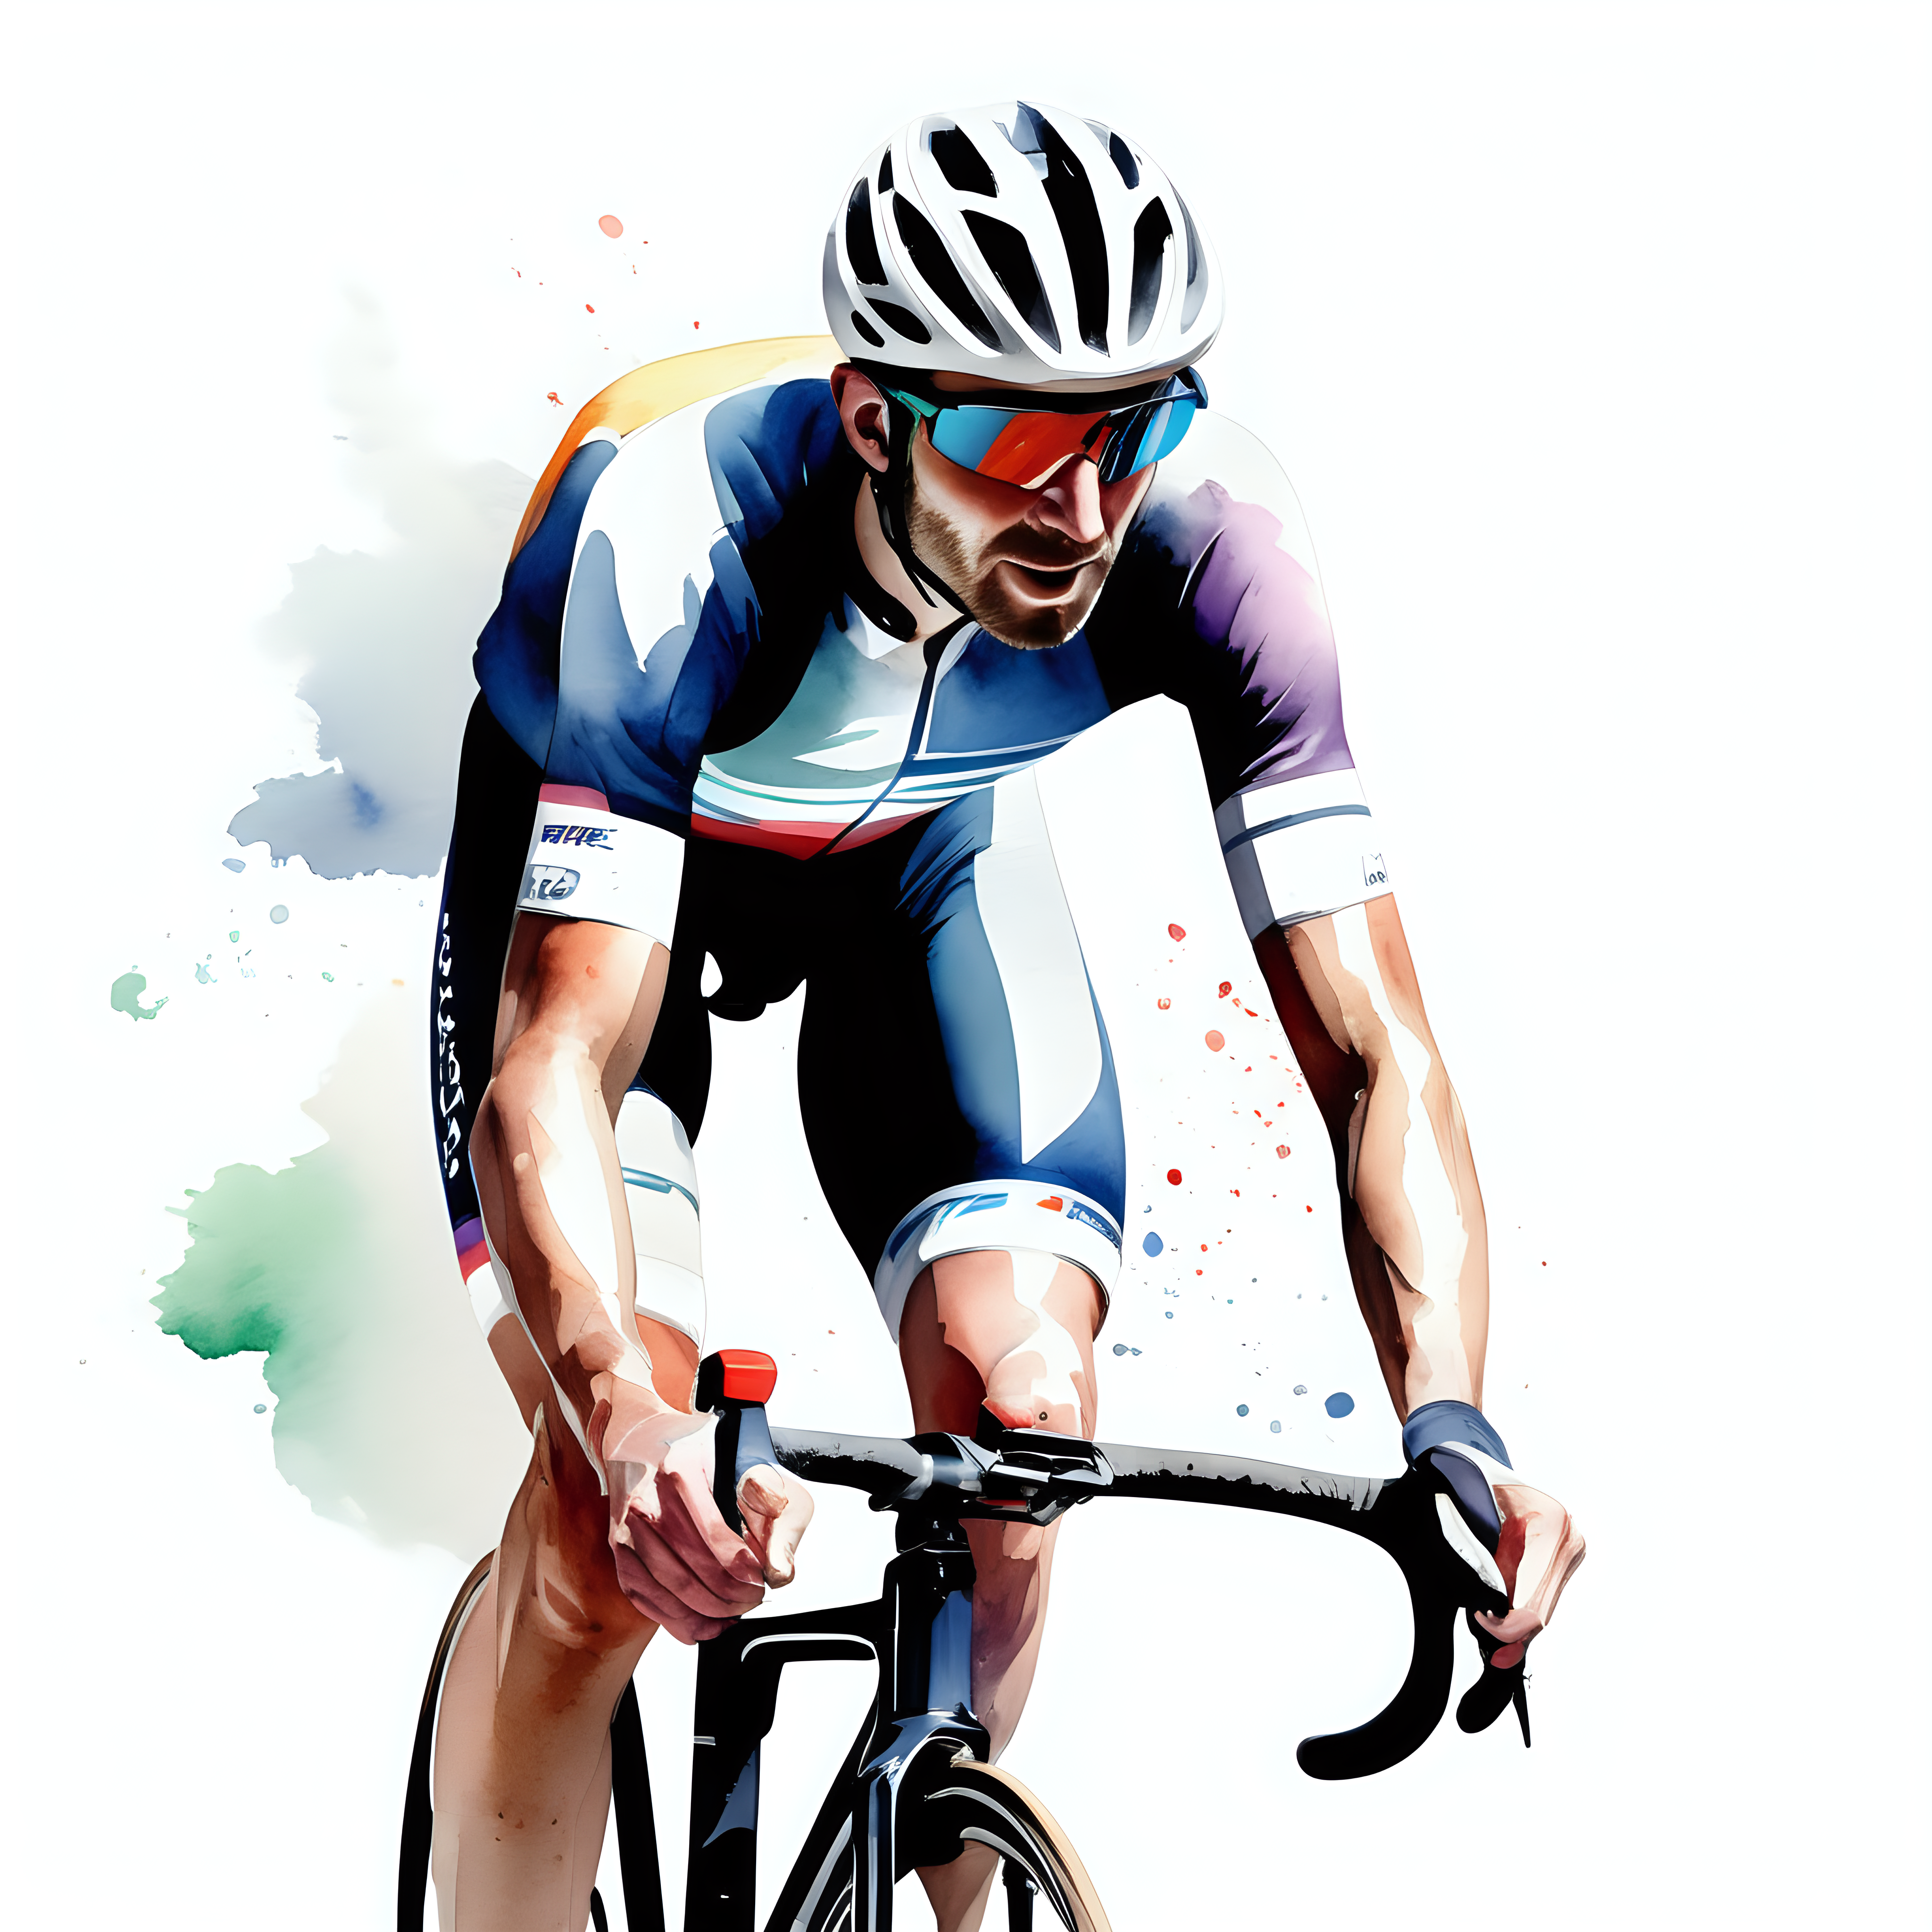 bílé pozadí_sportovec_cyklista_realná animace_závodník_akvarel barvy
